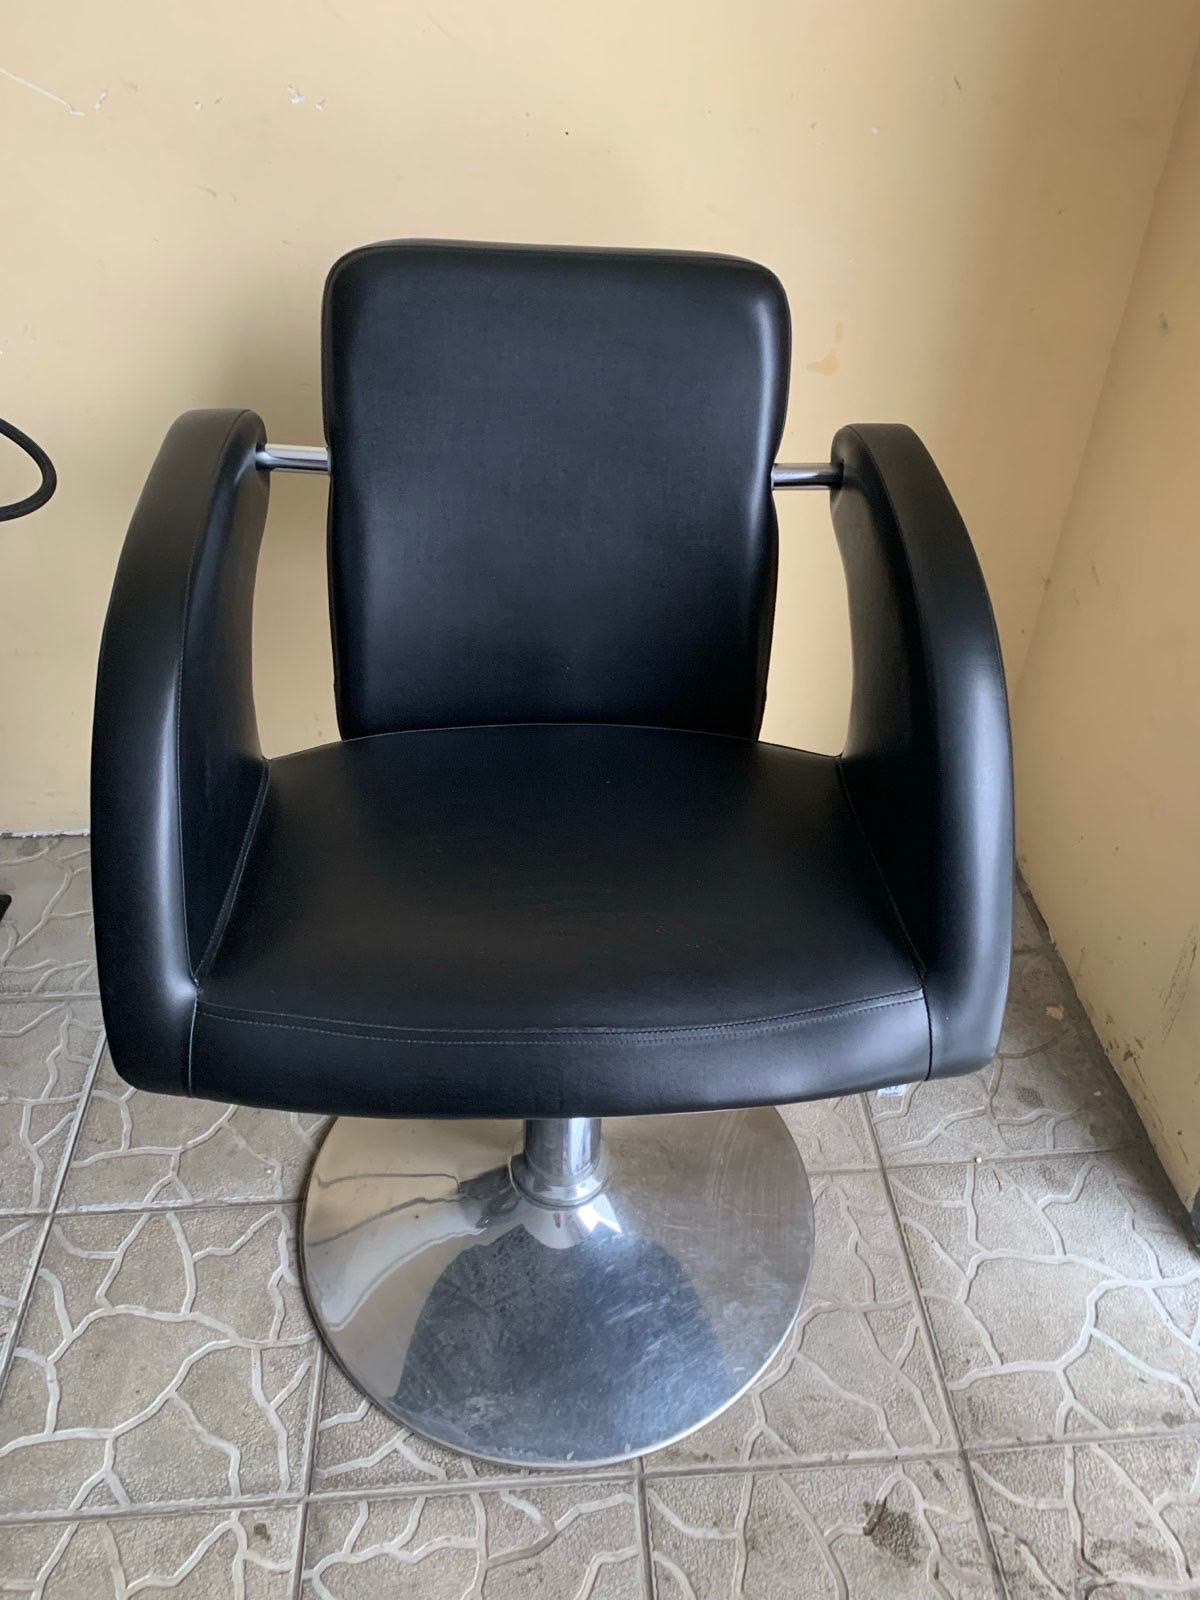 Продам мийку перукарську з кріслом для клієнта 13 000 грн